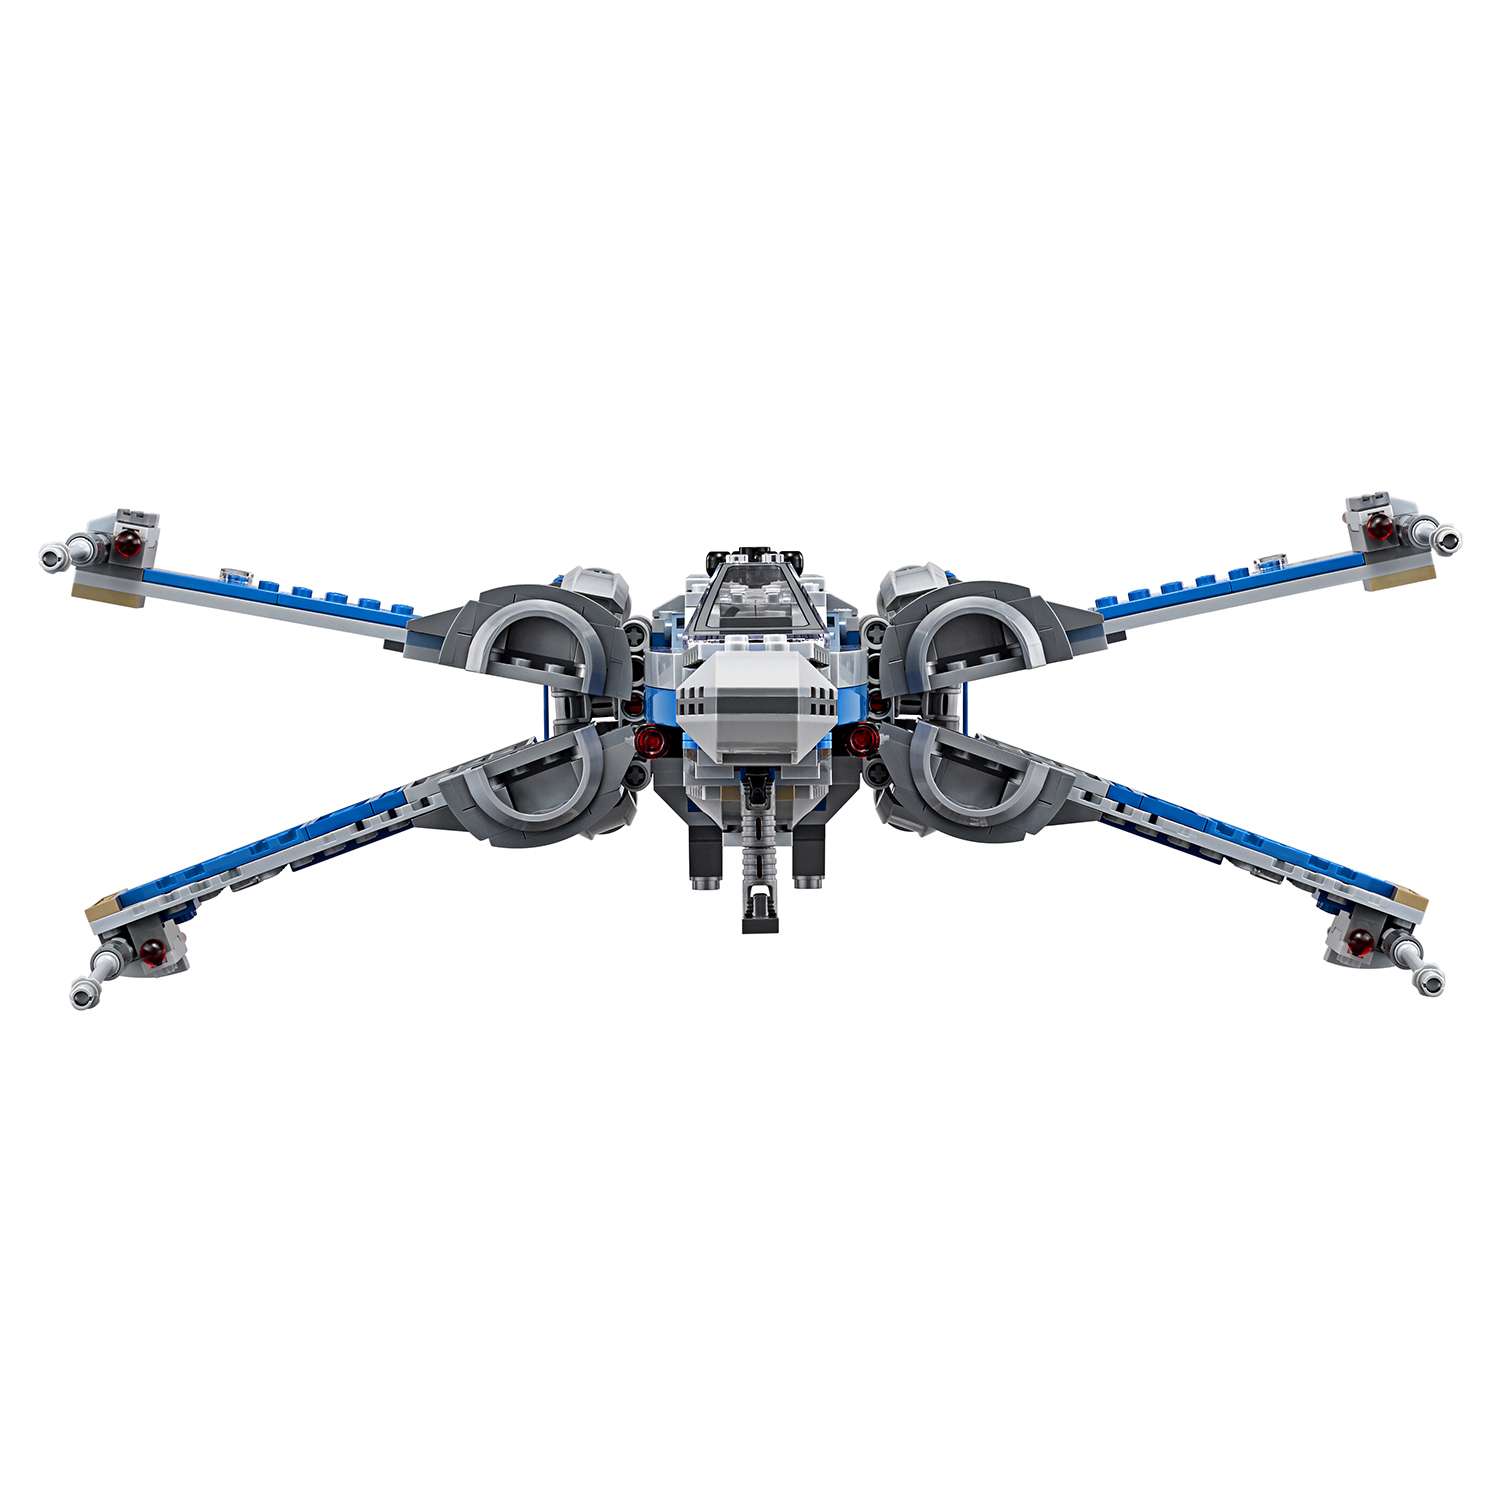 Конструктор LEGO Star Wars TM Истребитель Сопротивления типа Икс (75149) - фото 11